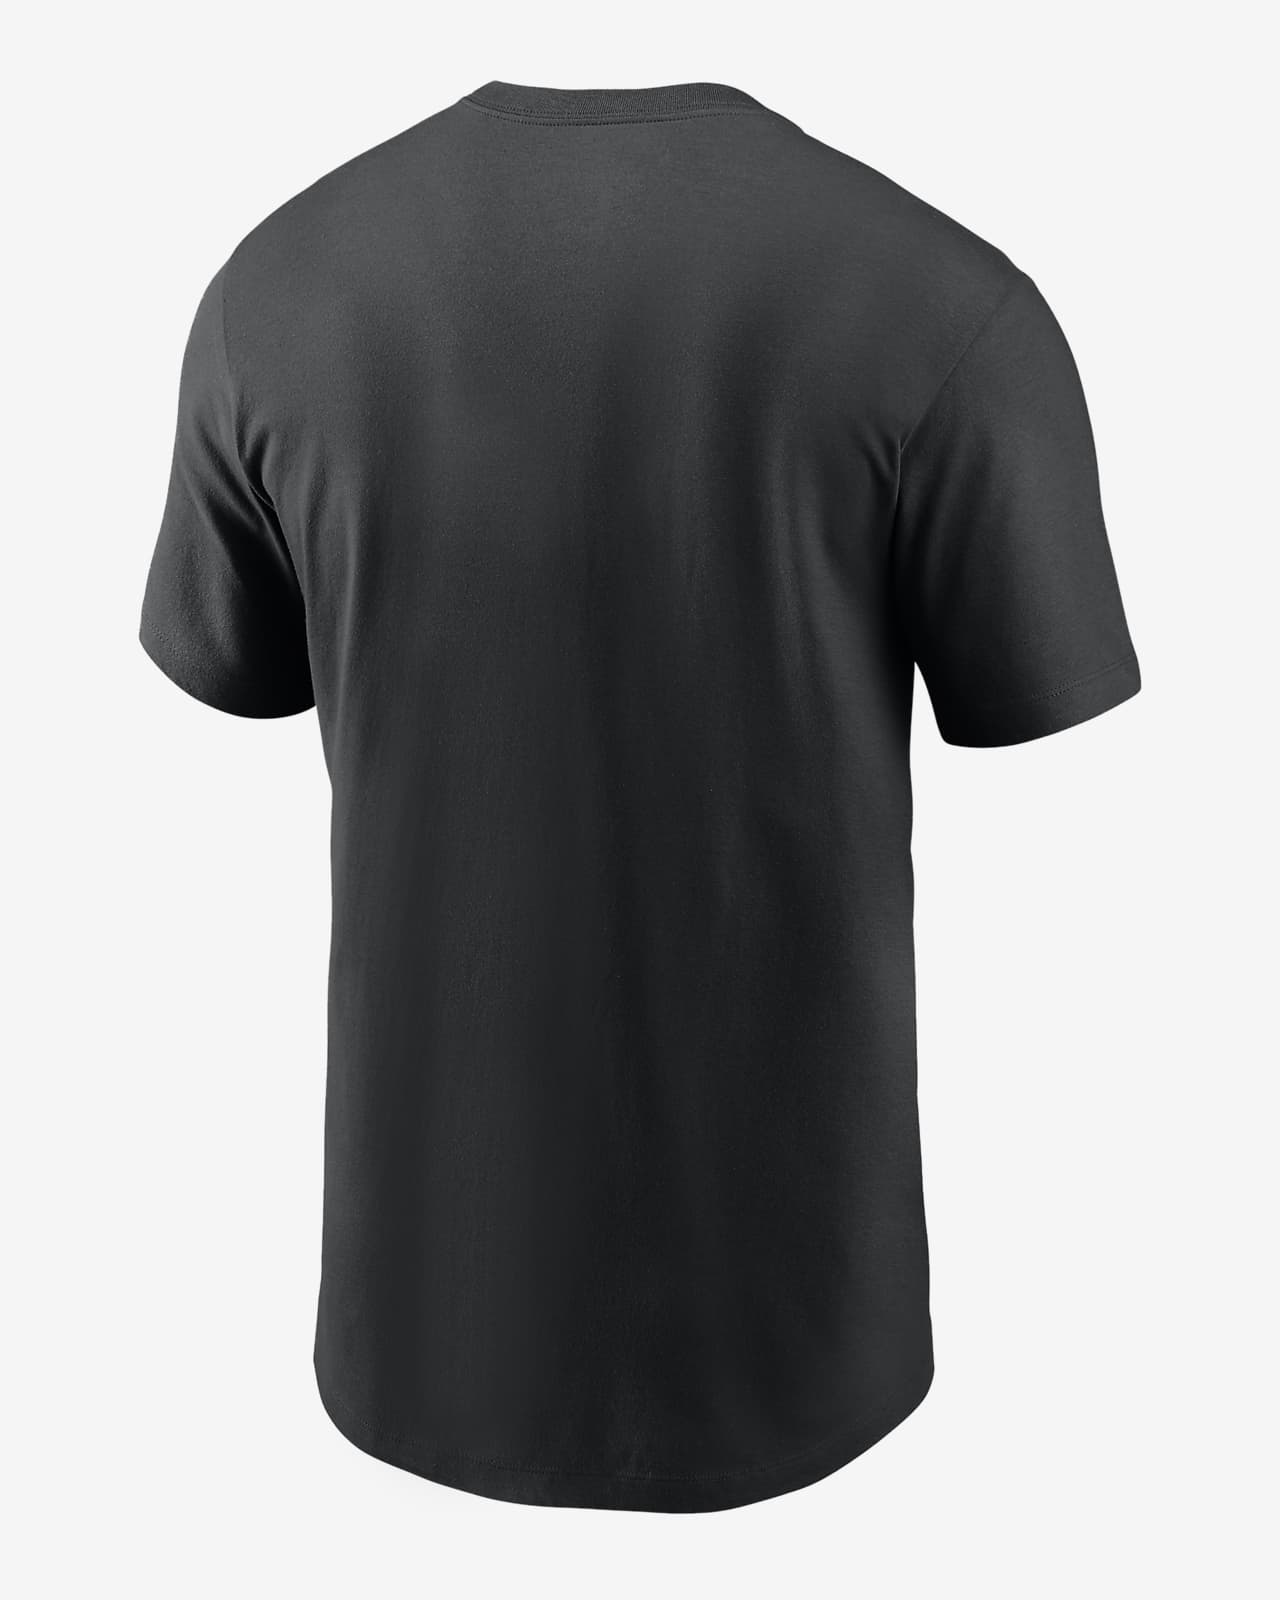 Chicago White Sox Team Scoreboard Men's Nike MLB T-Shirt